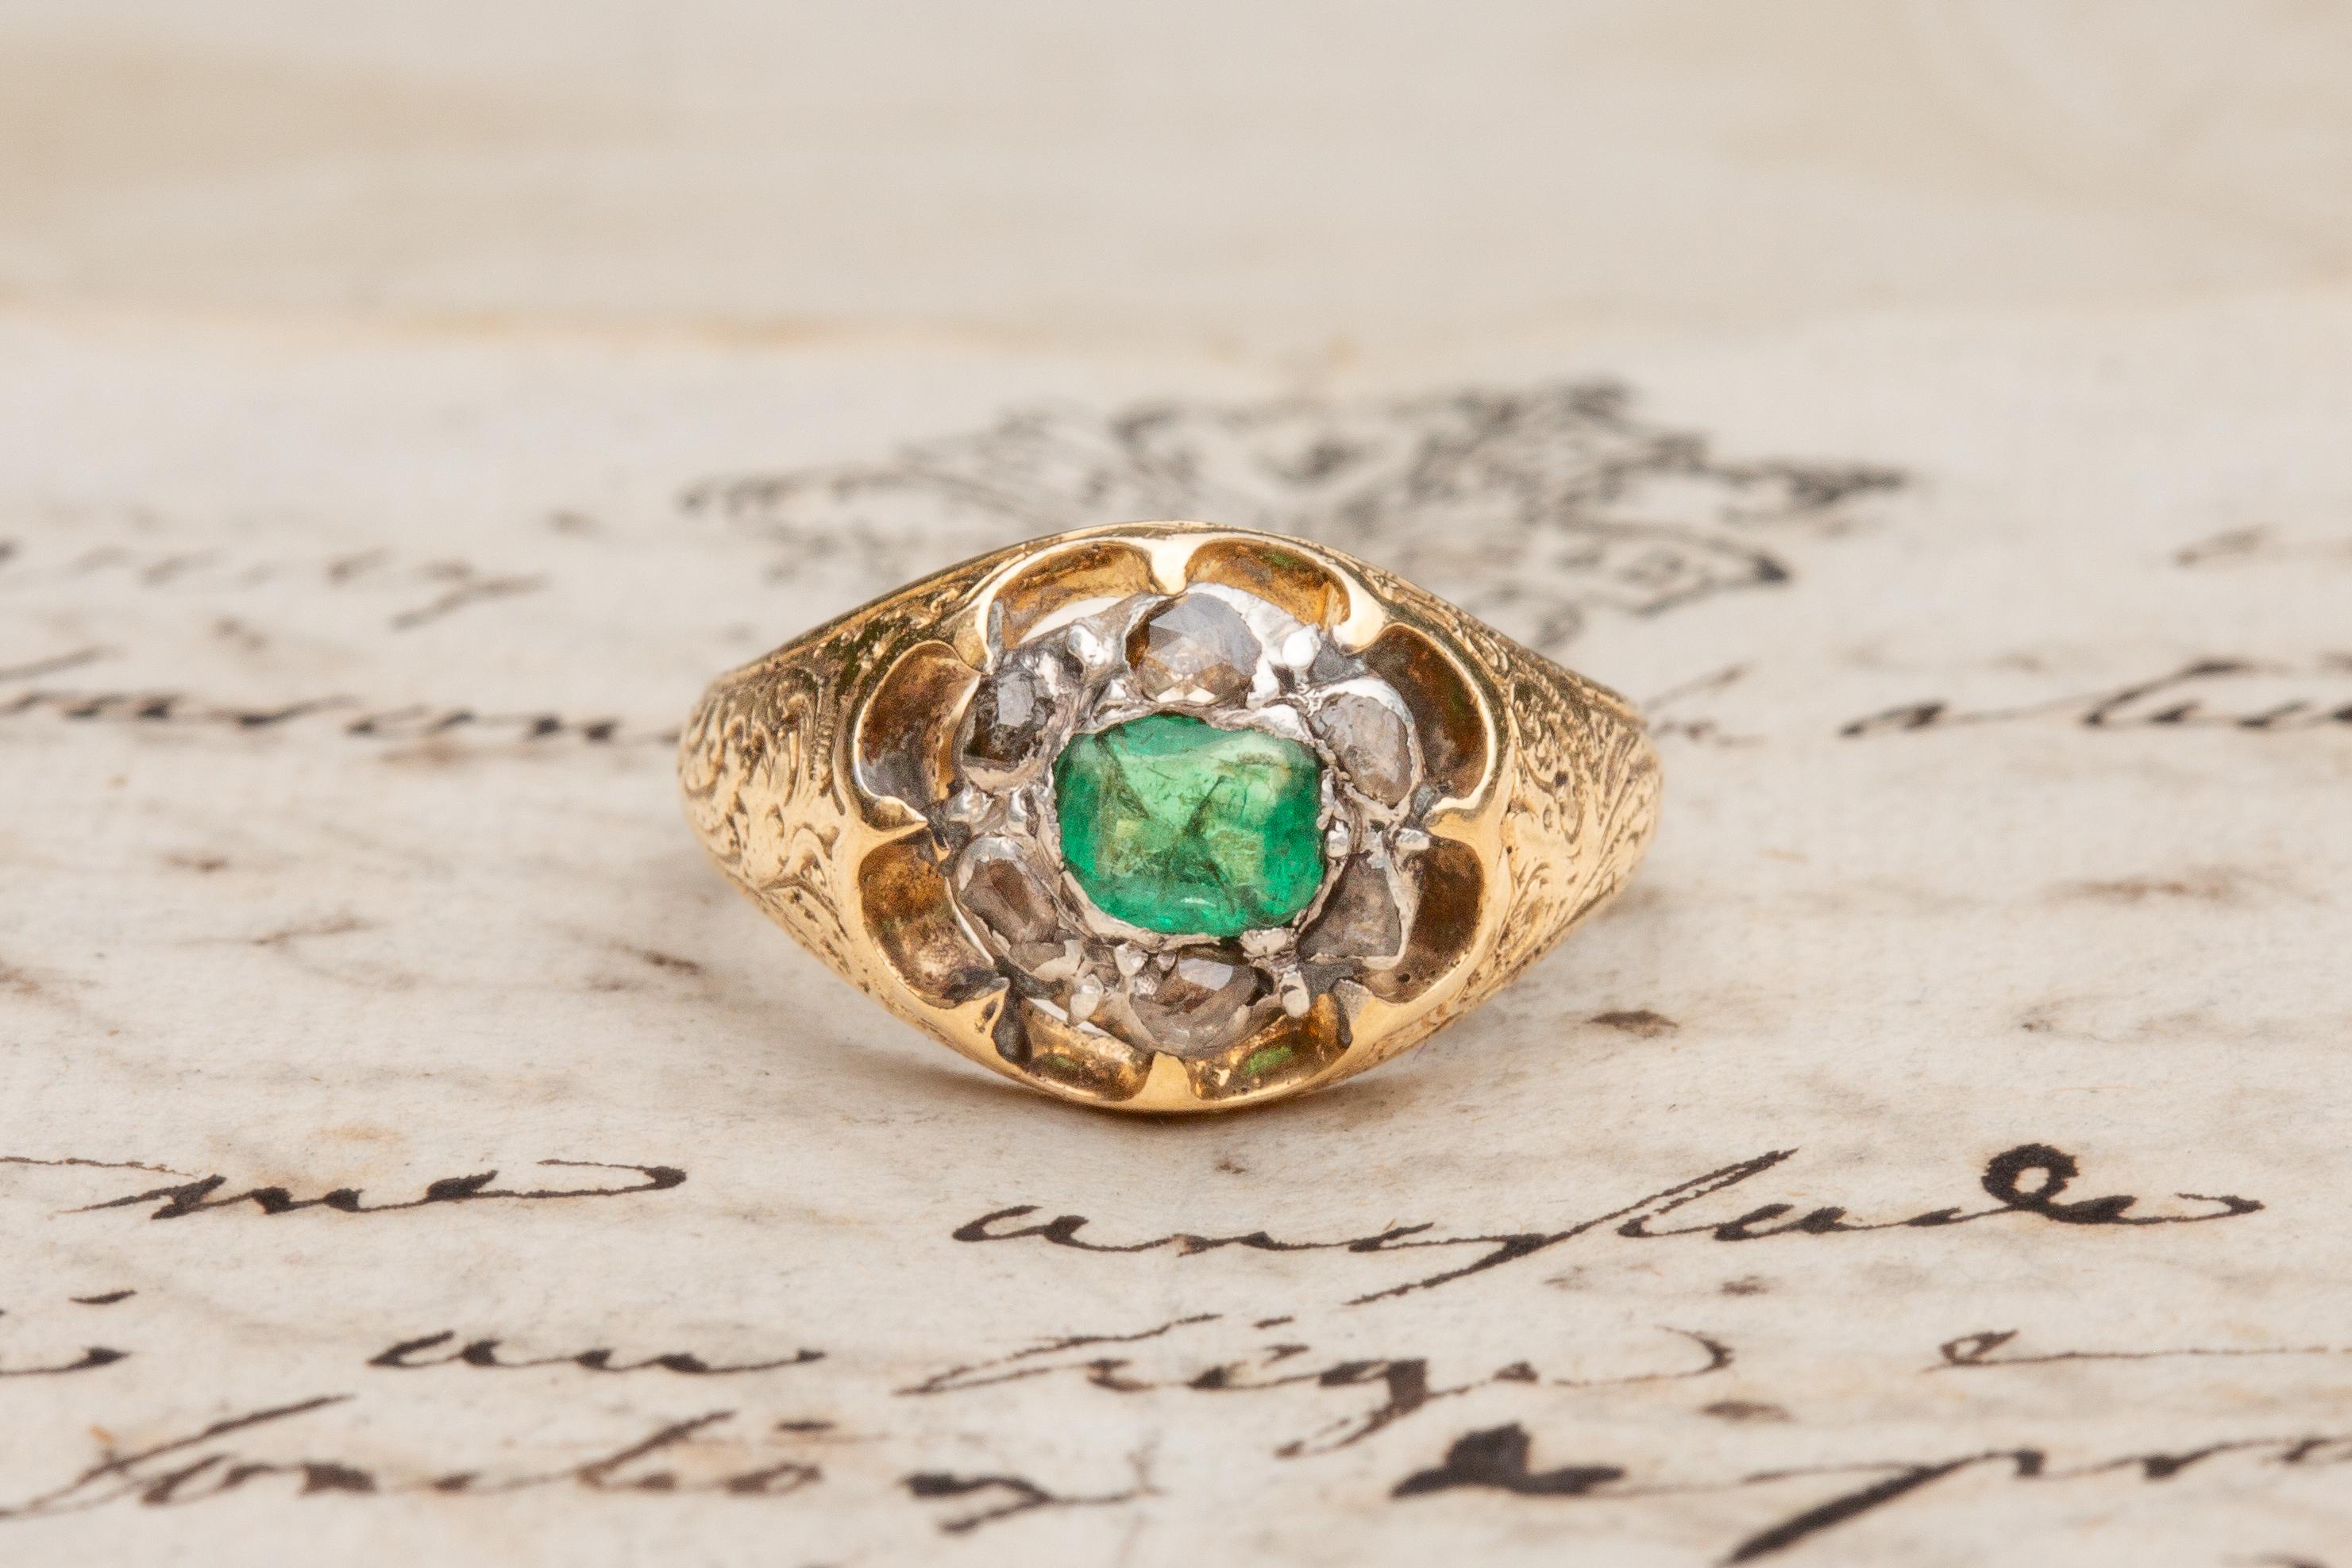 Dieser ungewöhnliche antike Smaragd- und Diamantring wurde in Frankreich hergestellt und stammt aus dem frühen 19. Jahrhundert.

In der Mitte ruht ein leuchtender Smaragd von 0,3 Karat im Stufenschliff in einer Fassung aus Rubinsilber mit offener